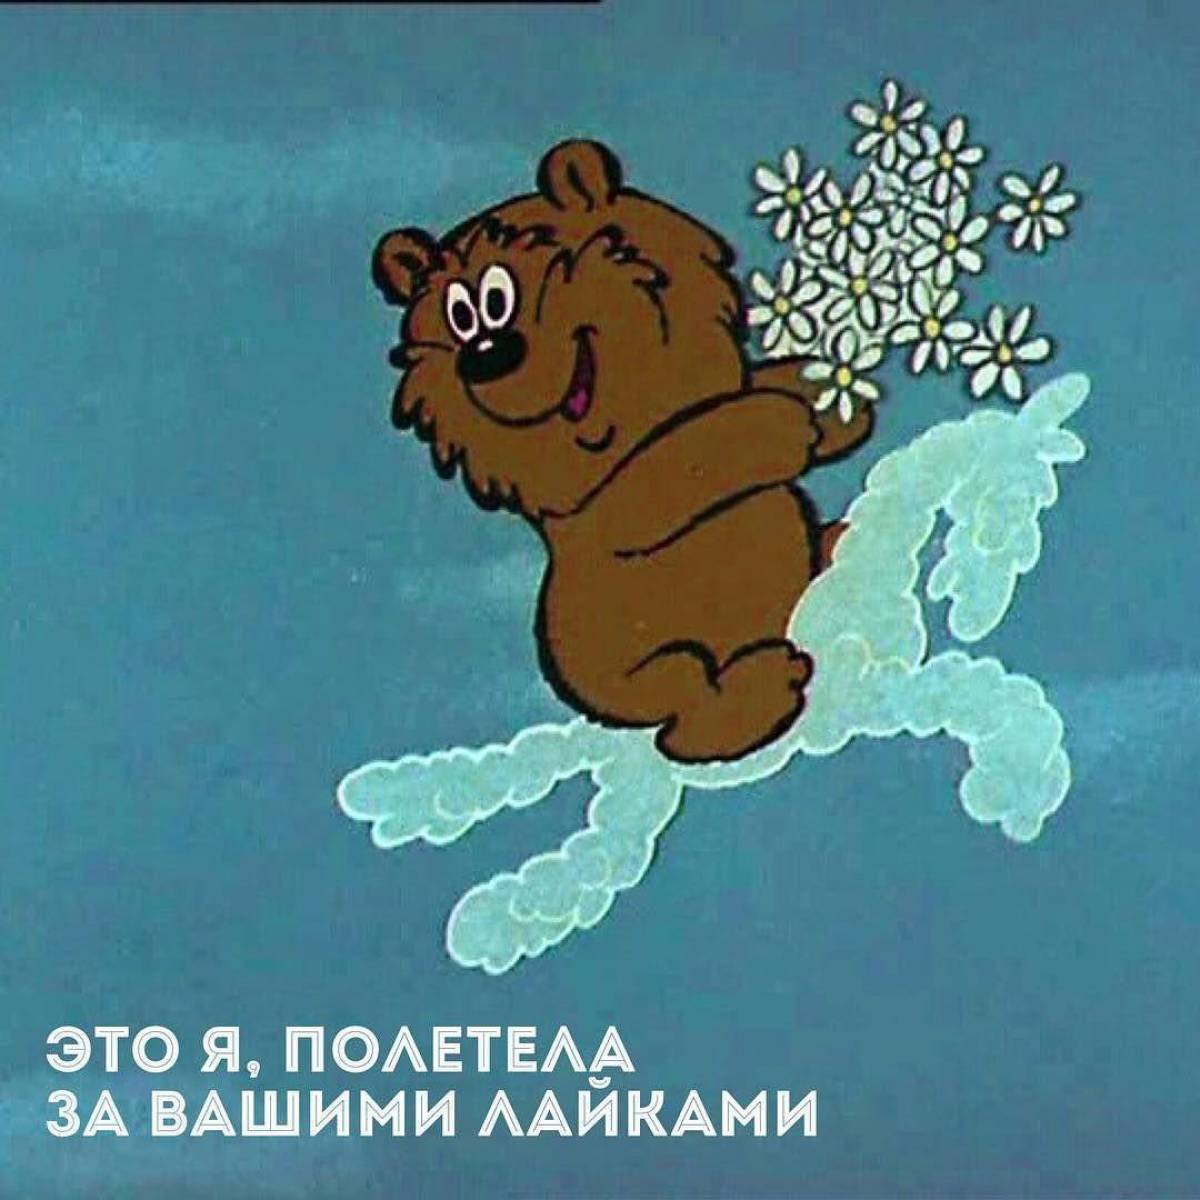 Облака трям здравствуйте. Трям Здравствуйте 1980 медведь. Медведь из мультфильма Трям Здравствуйте.